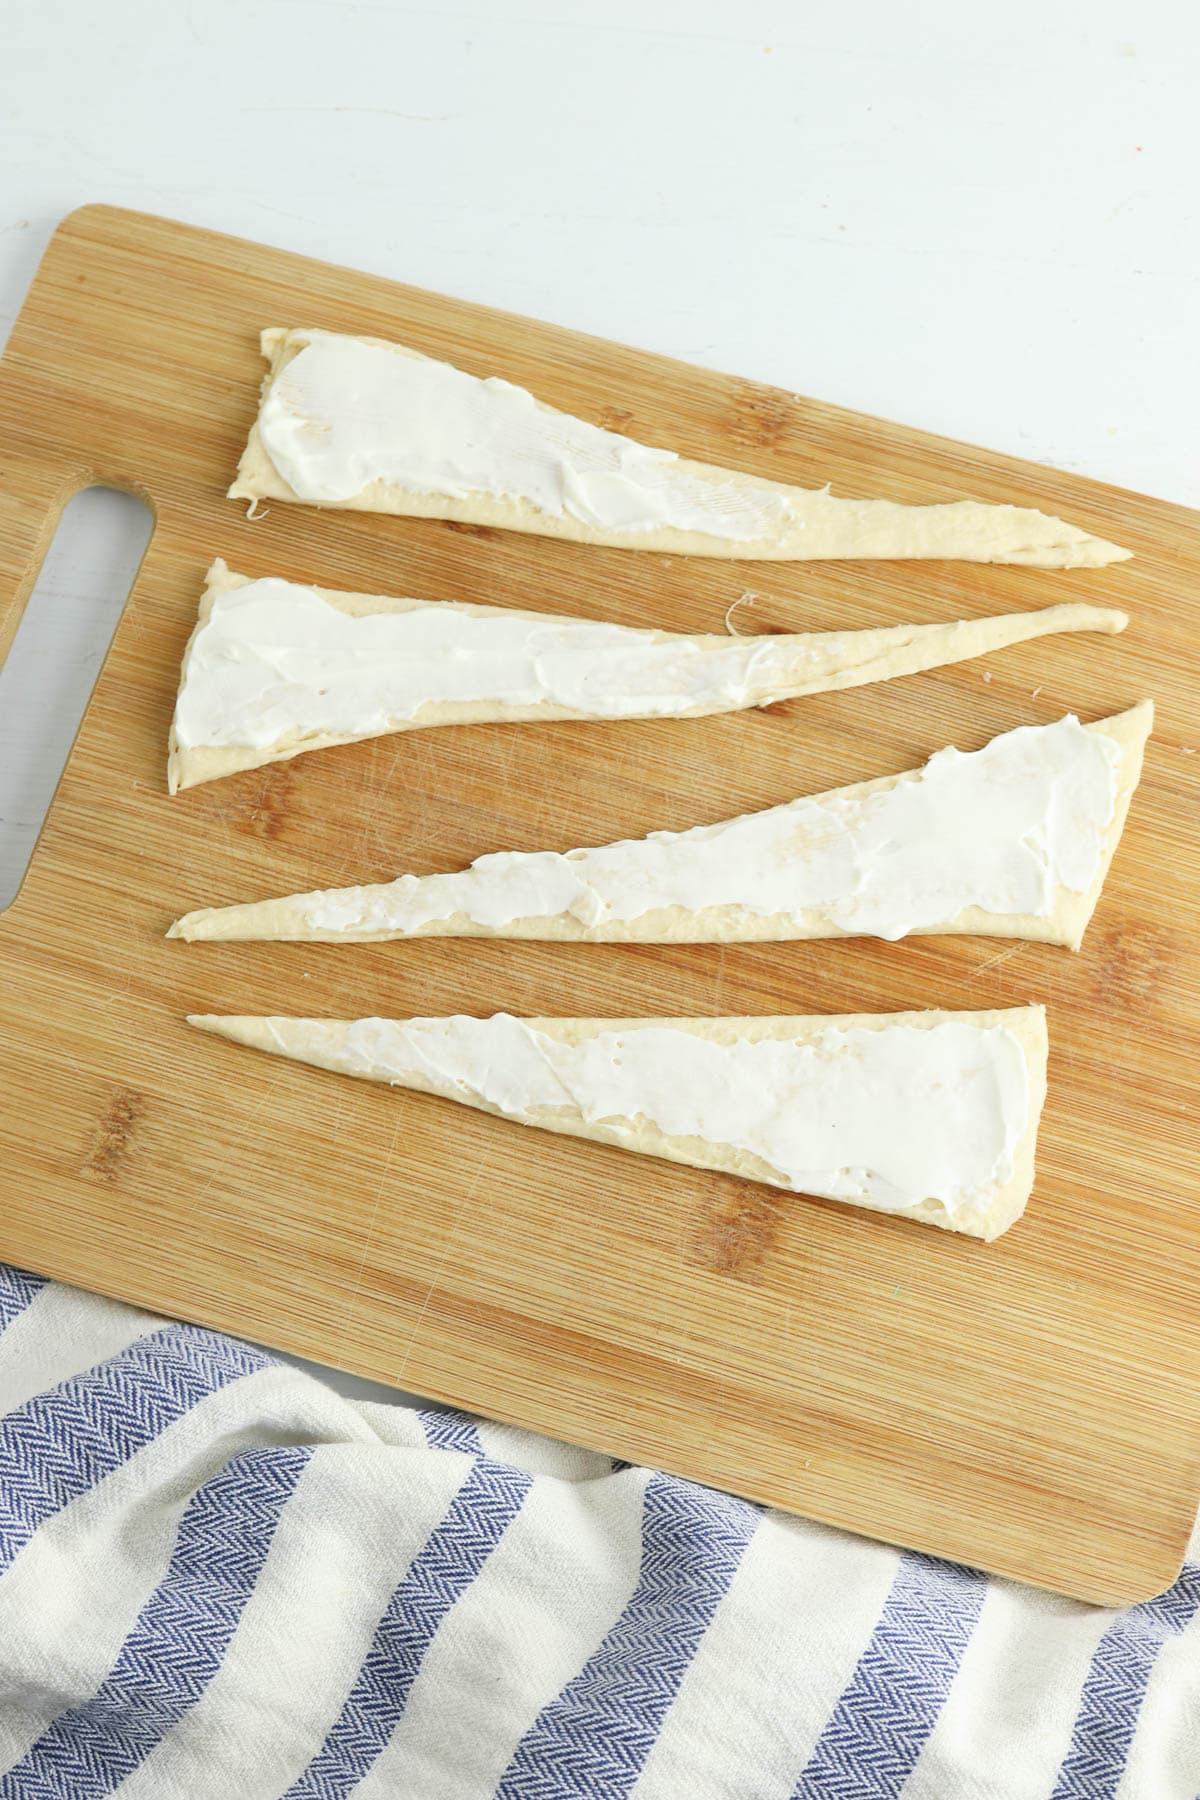 Cream cheese spread over uncooked crescent dough